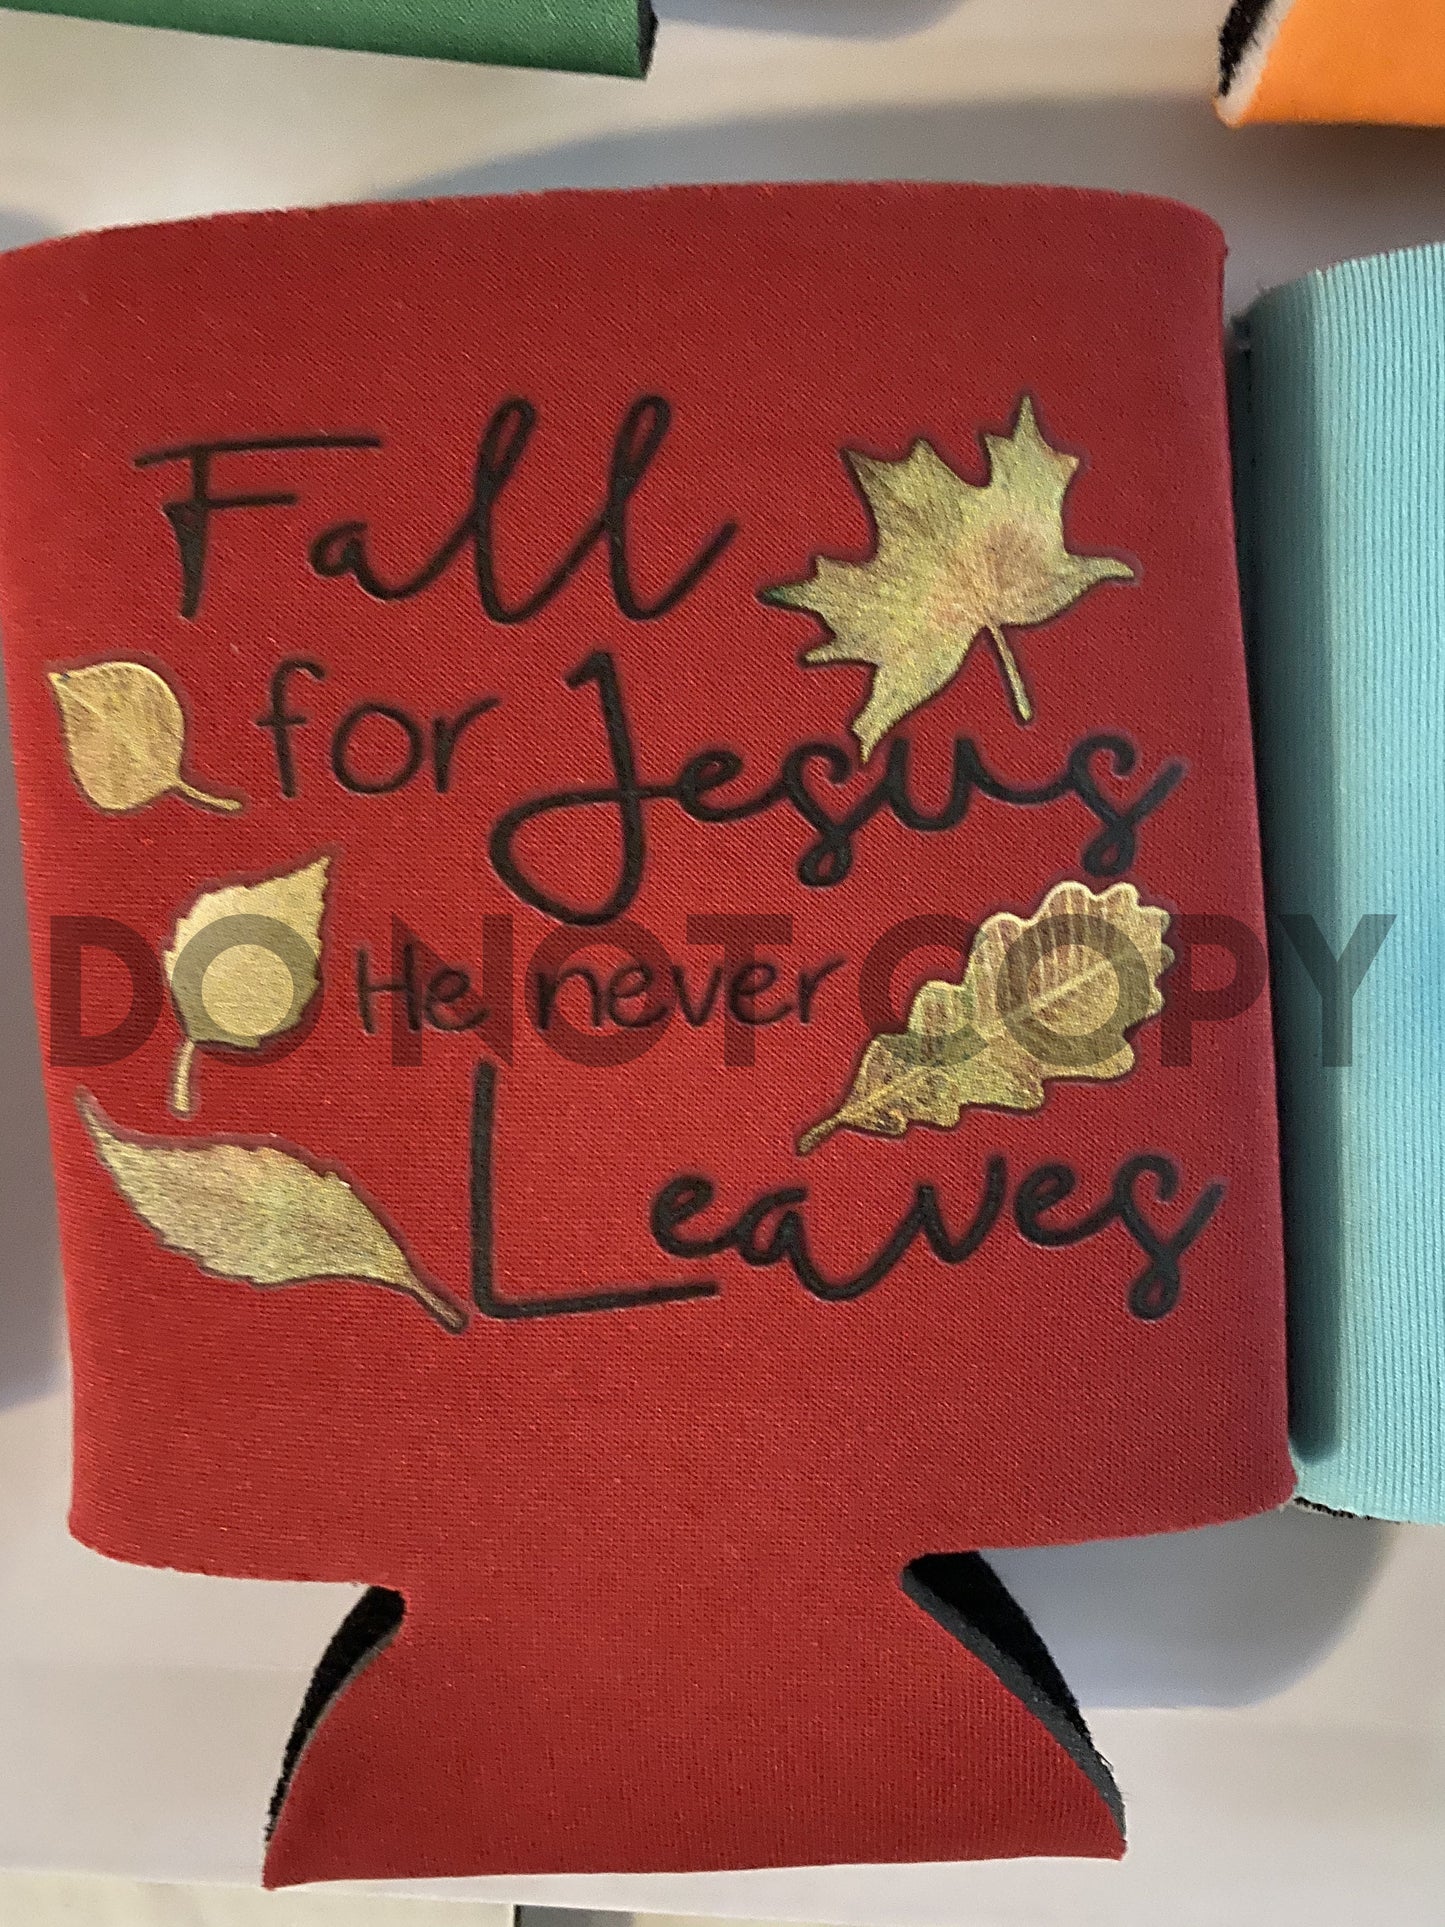 Fall for Jesus He never leaves full color screen print transfer